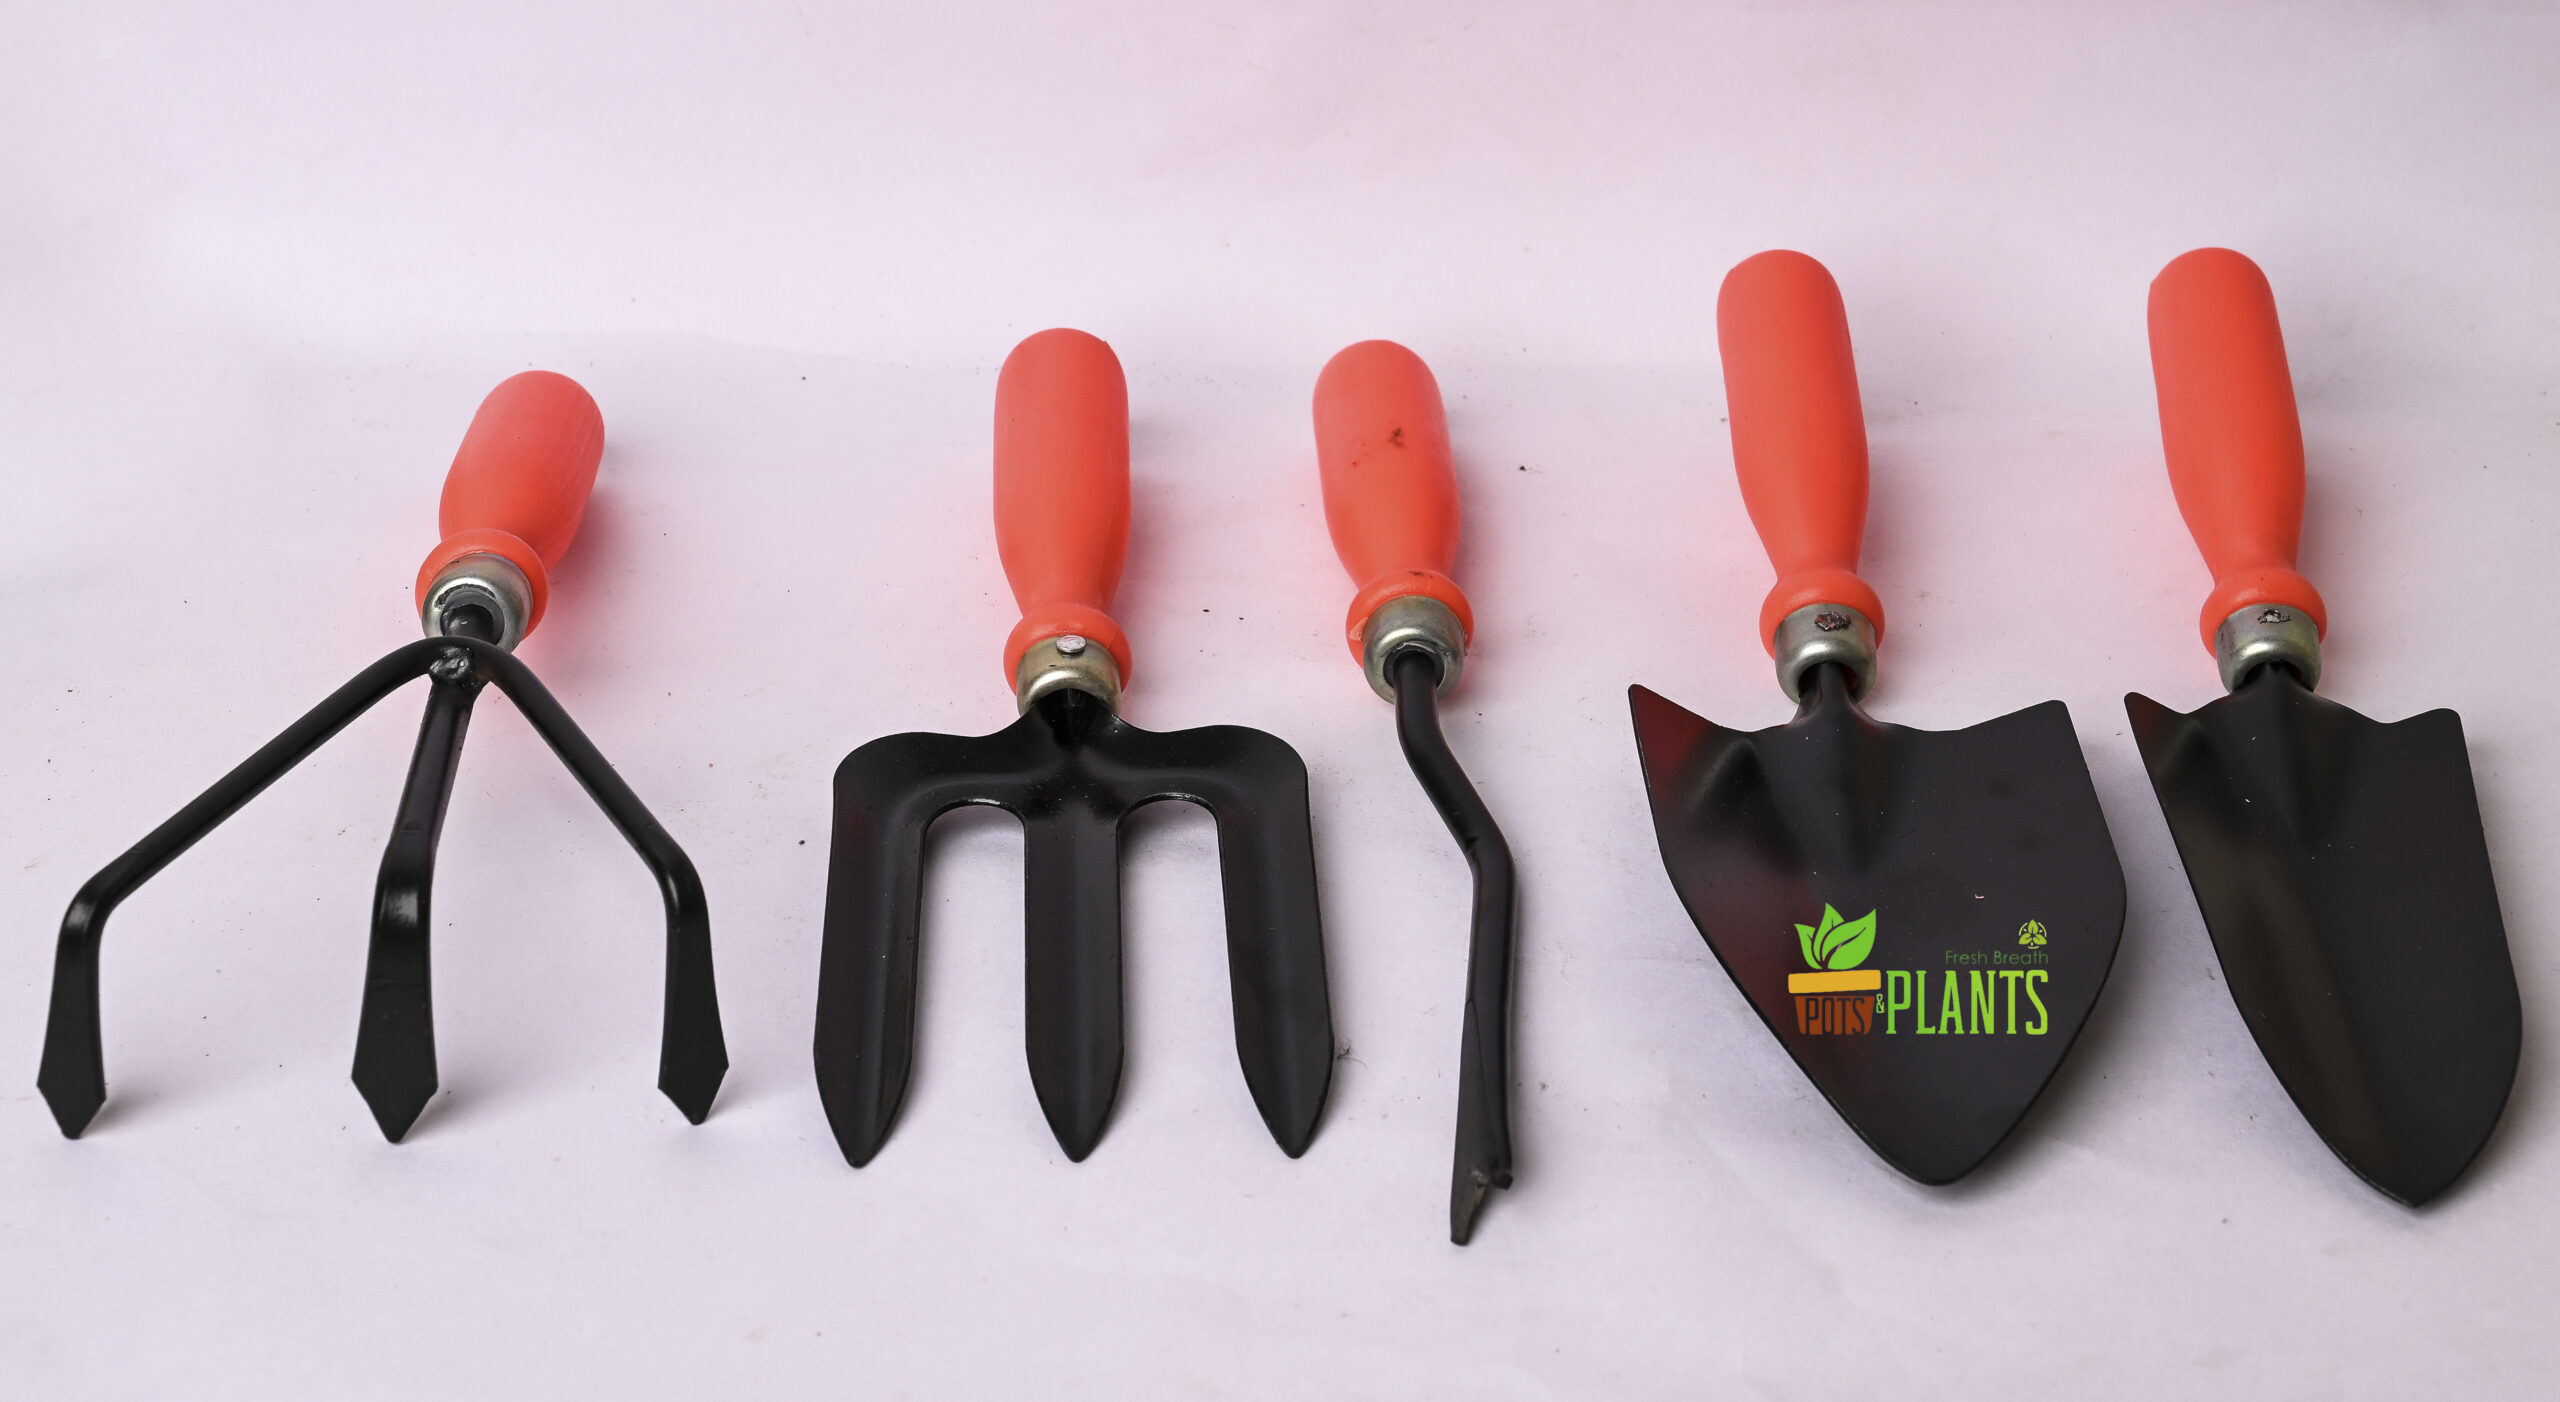 5 Pcs Gardening Tools Kit For All Gardening Needs, Big Size (Weeder, Big Trowel, Hand Fork, Cultivator)-Orange & Black